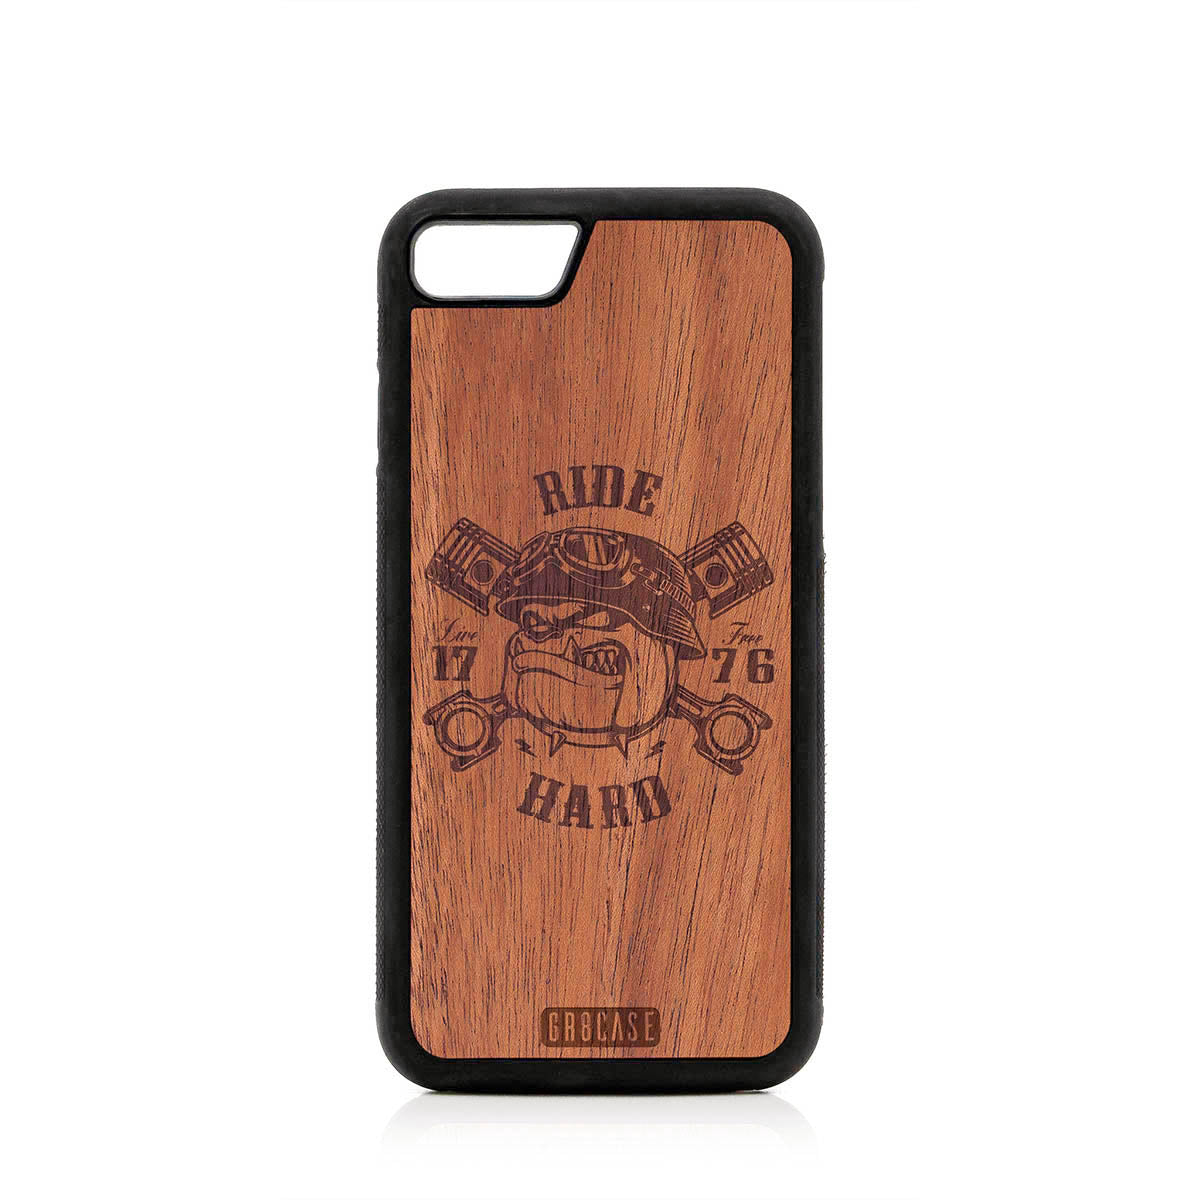 Ride Hard Live Free (Biker Dog) Design Wood Case For iPhone 7/8 by GR8CASE